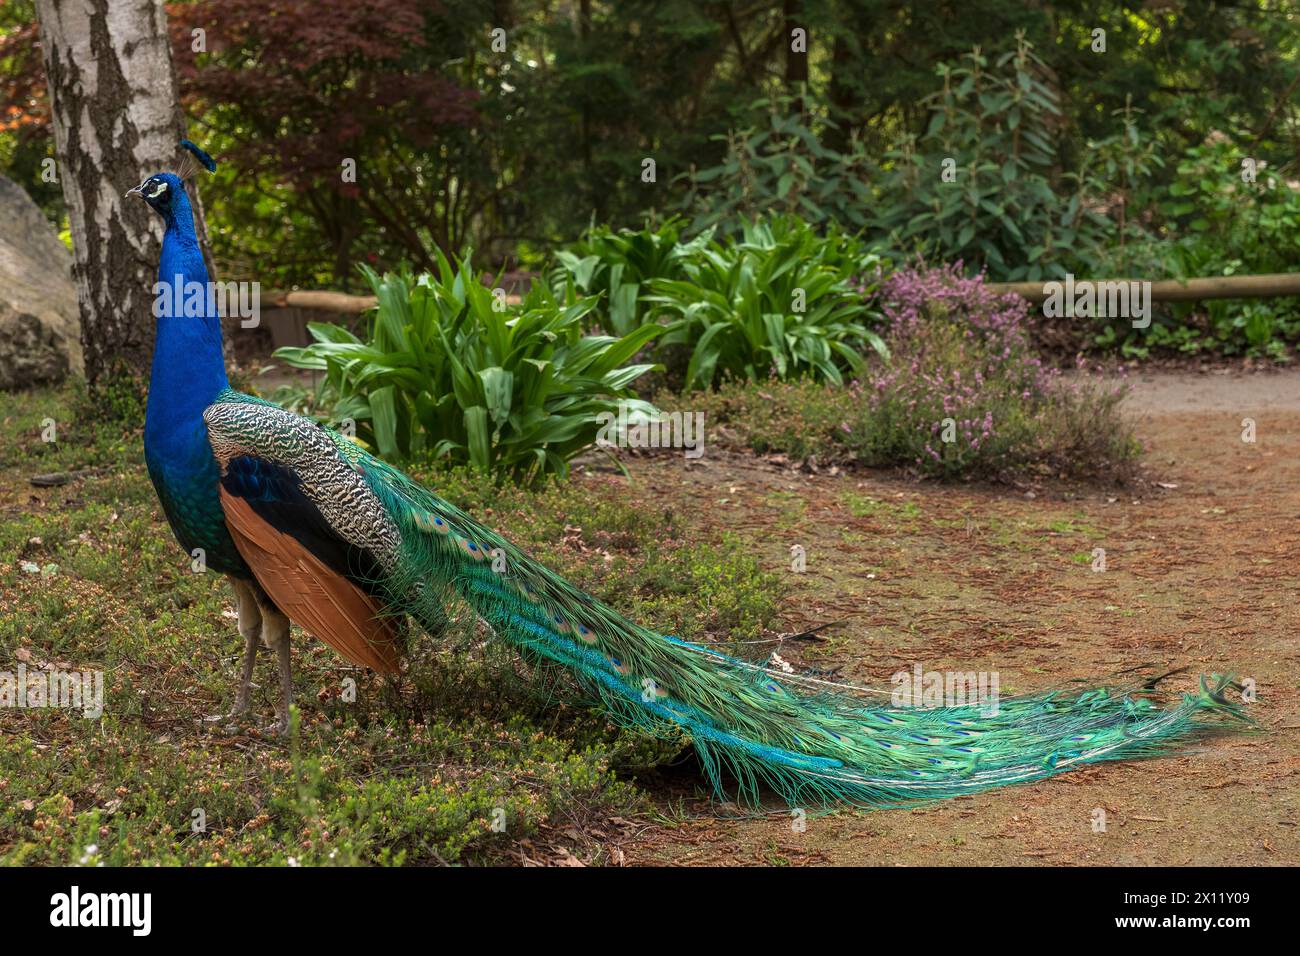 Blauer Pfau im Waldbotanischen Garten Köln. Der Blaue Pfau (Pavo cristatus) ist eine Vogelart aus der Familie der Fasane (Phasianidae) Stockfoto